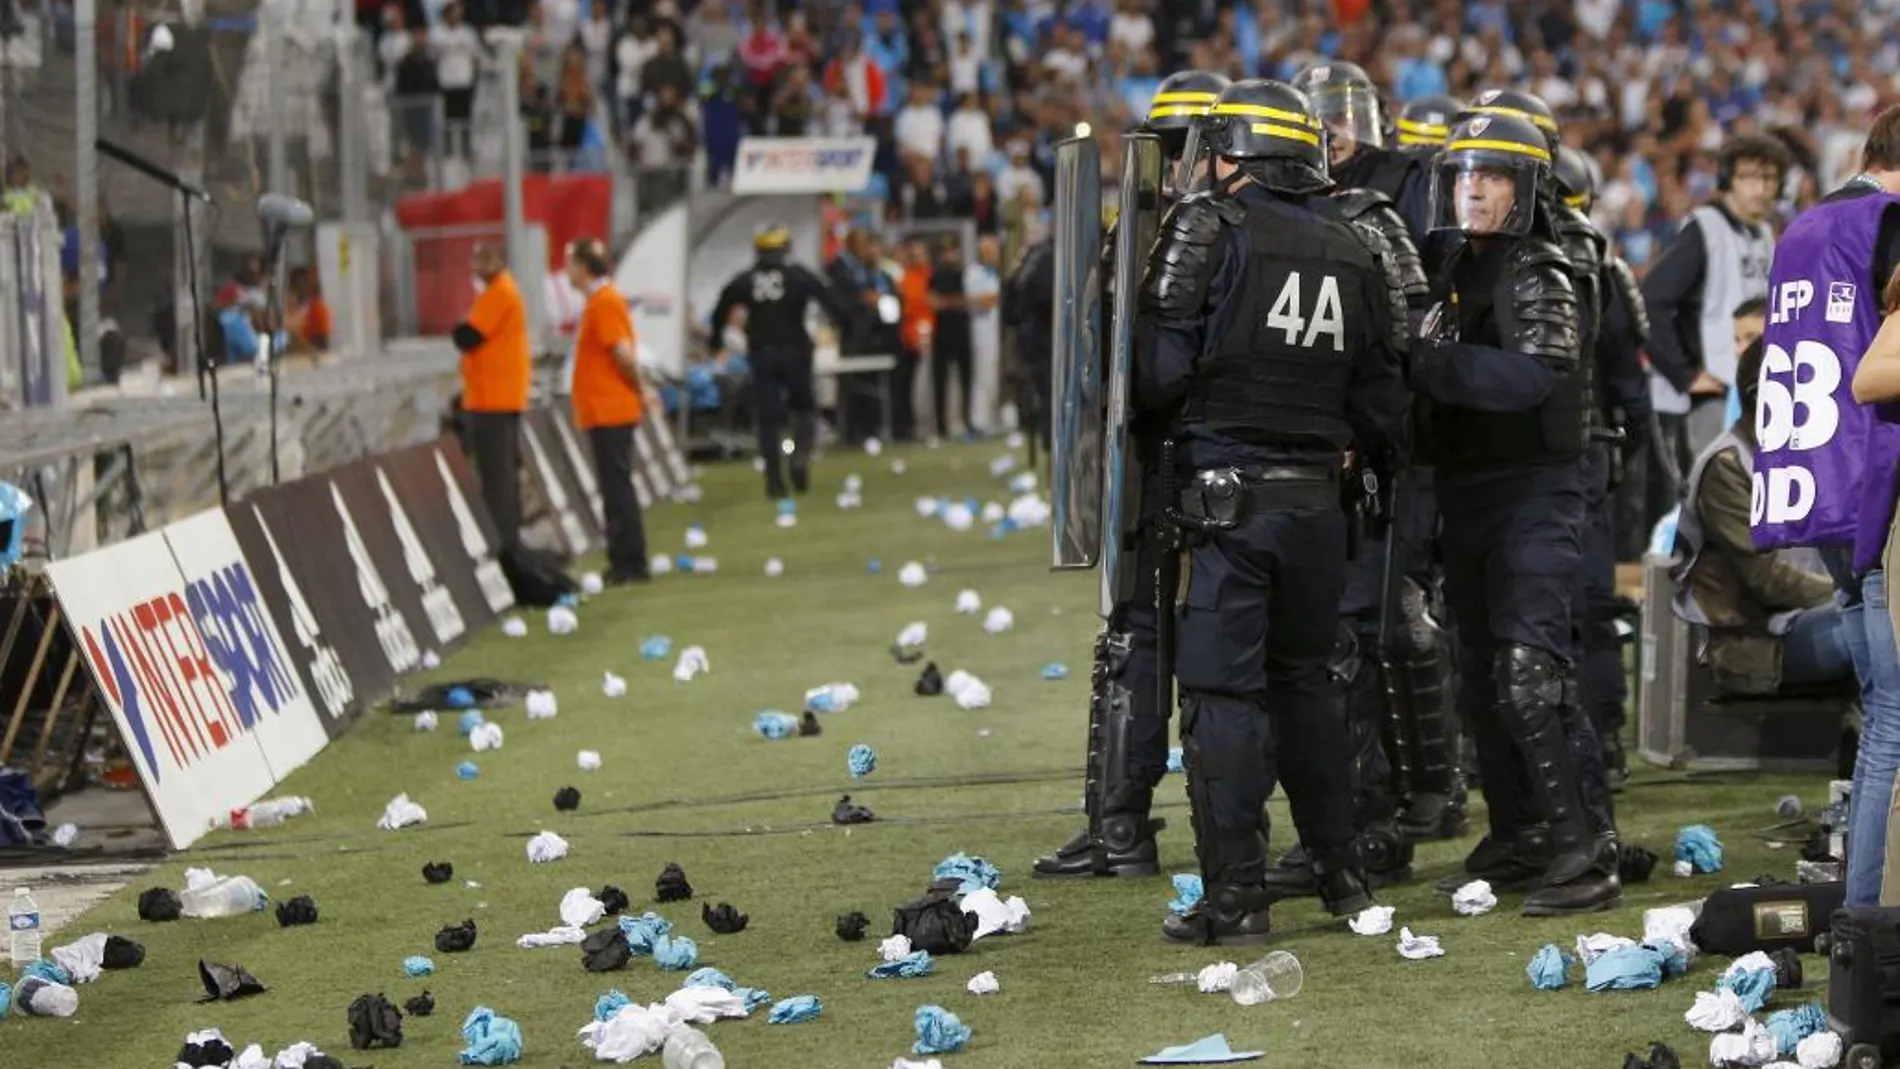 Incidentes en el encuentro entre Olympique de Marsella y Olympique de Lyon.